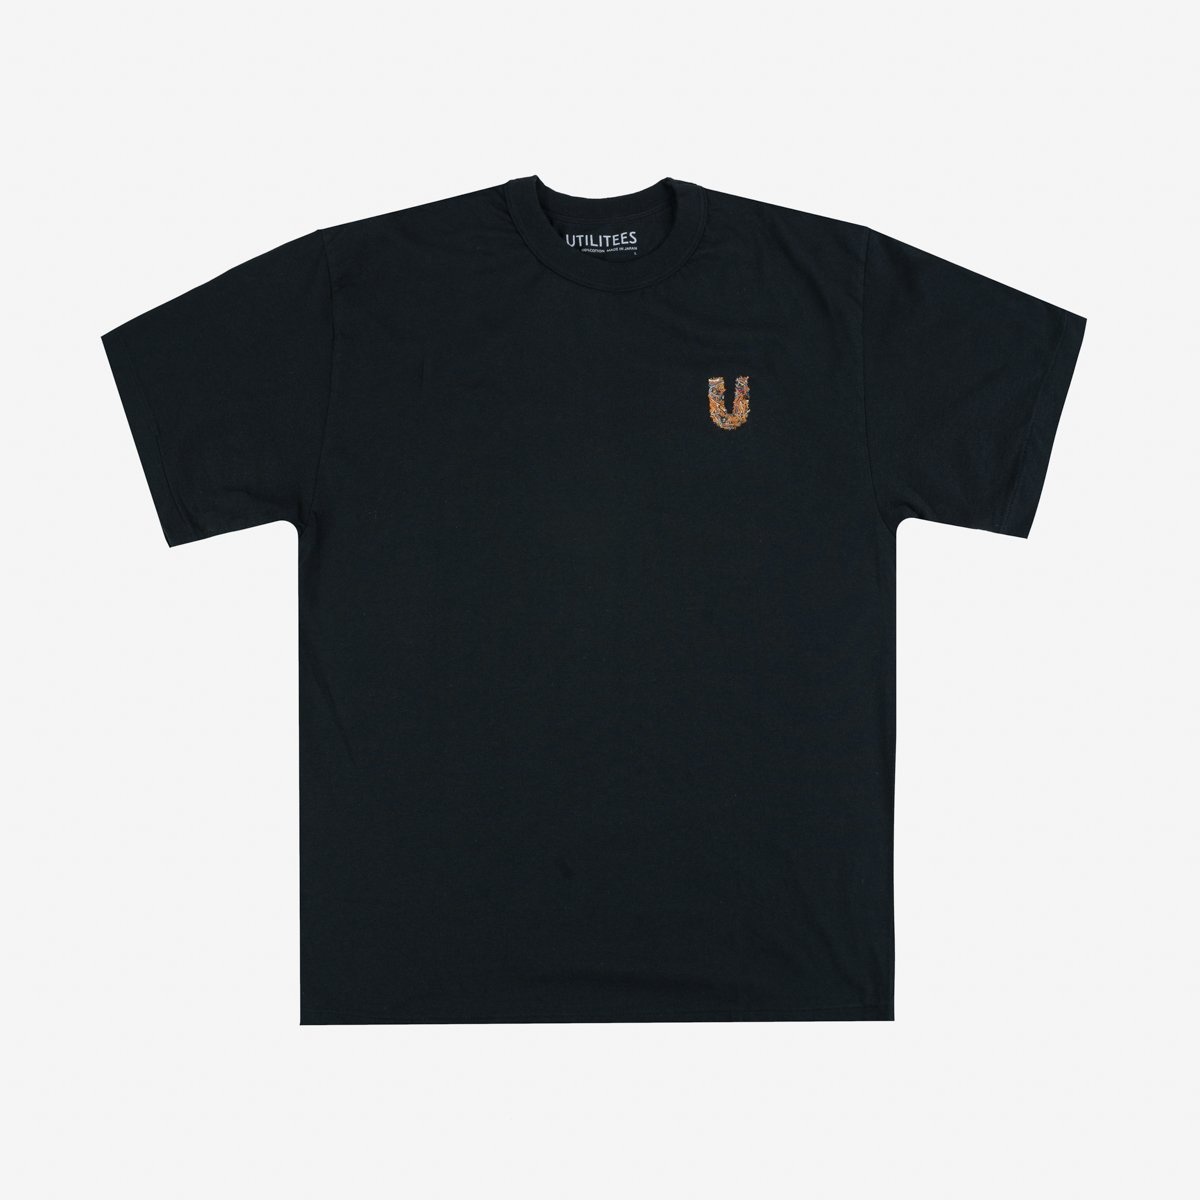 UTIL-ITO UTILITEES - 5.5oz Loopwheel Crew Neck T-Shirt - Black "Itokuzu" - 1